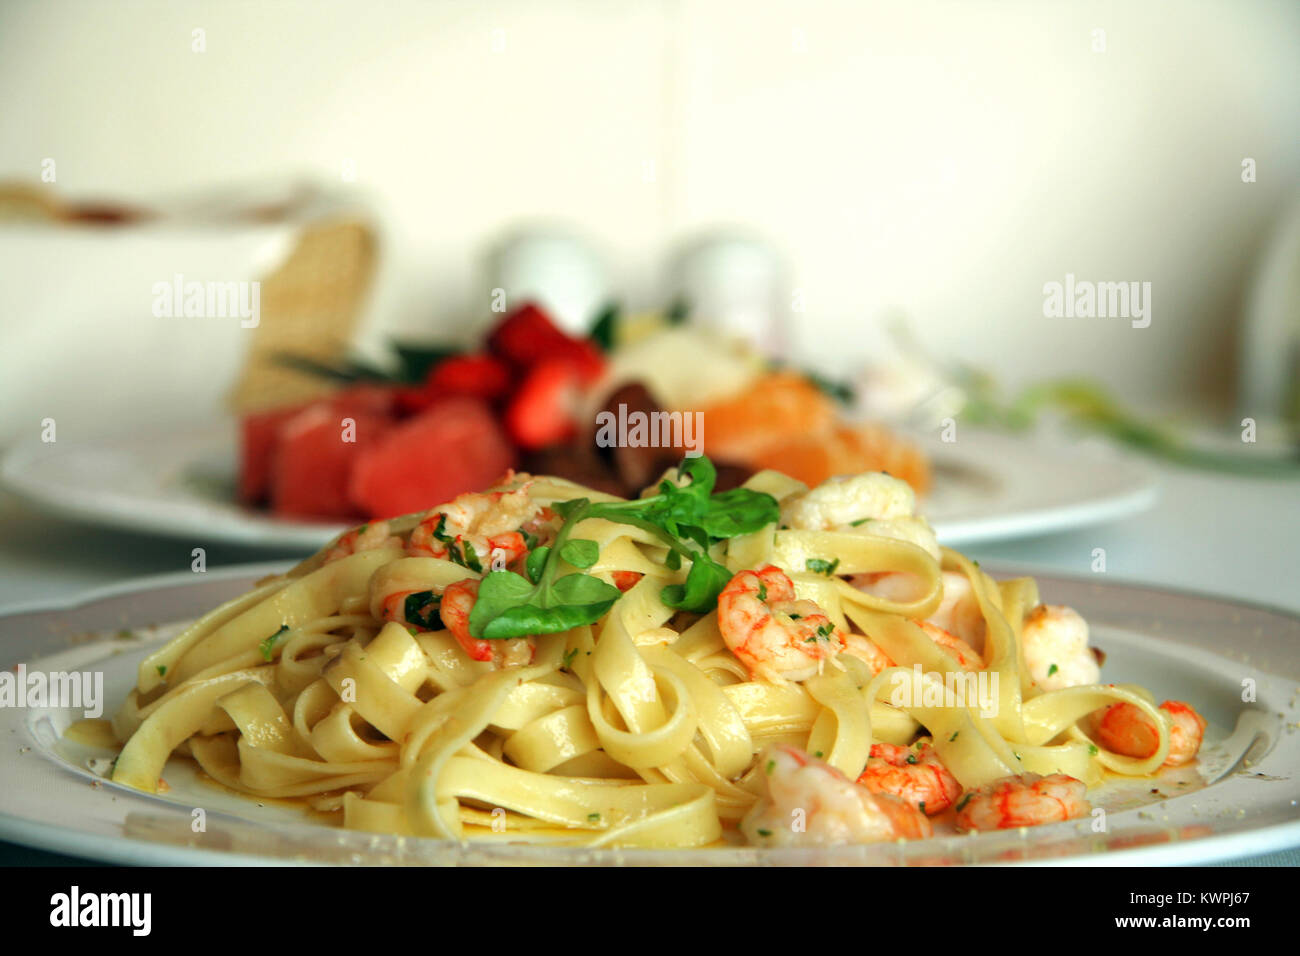 Close-up of shrimp pasta dish with a fruit salad dessert Stock Photo